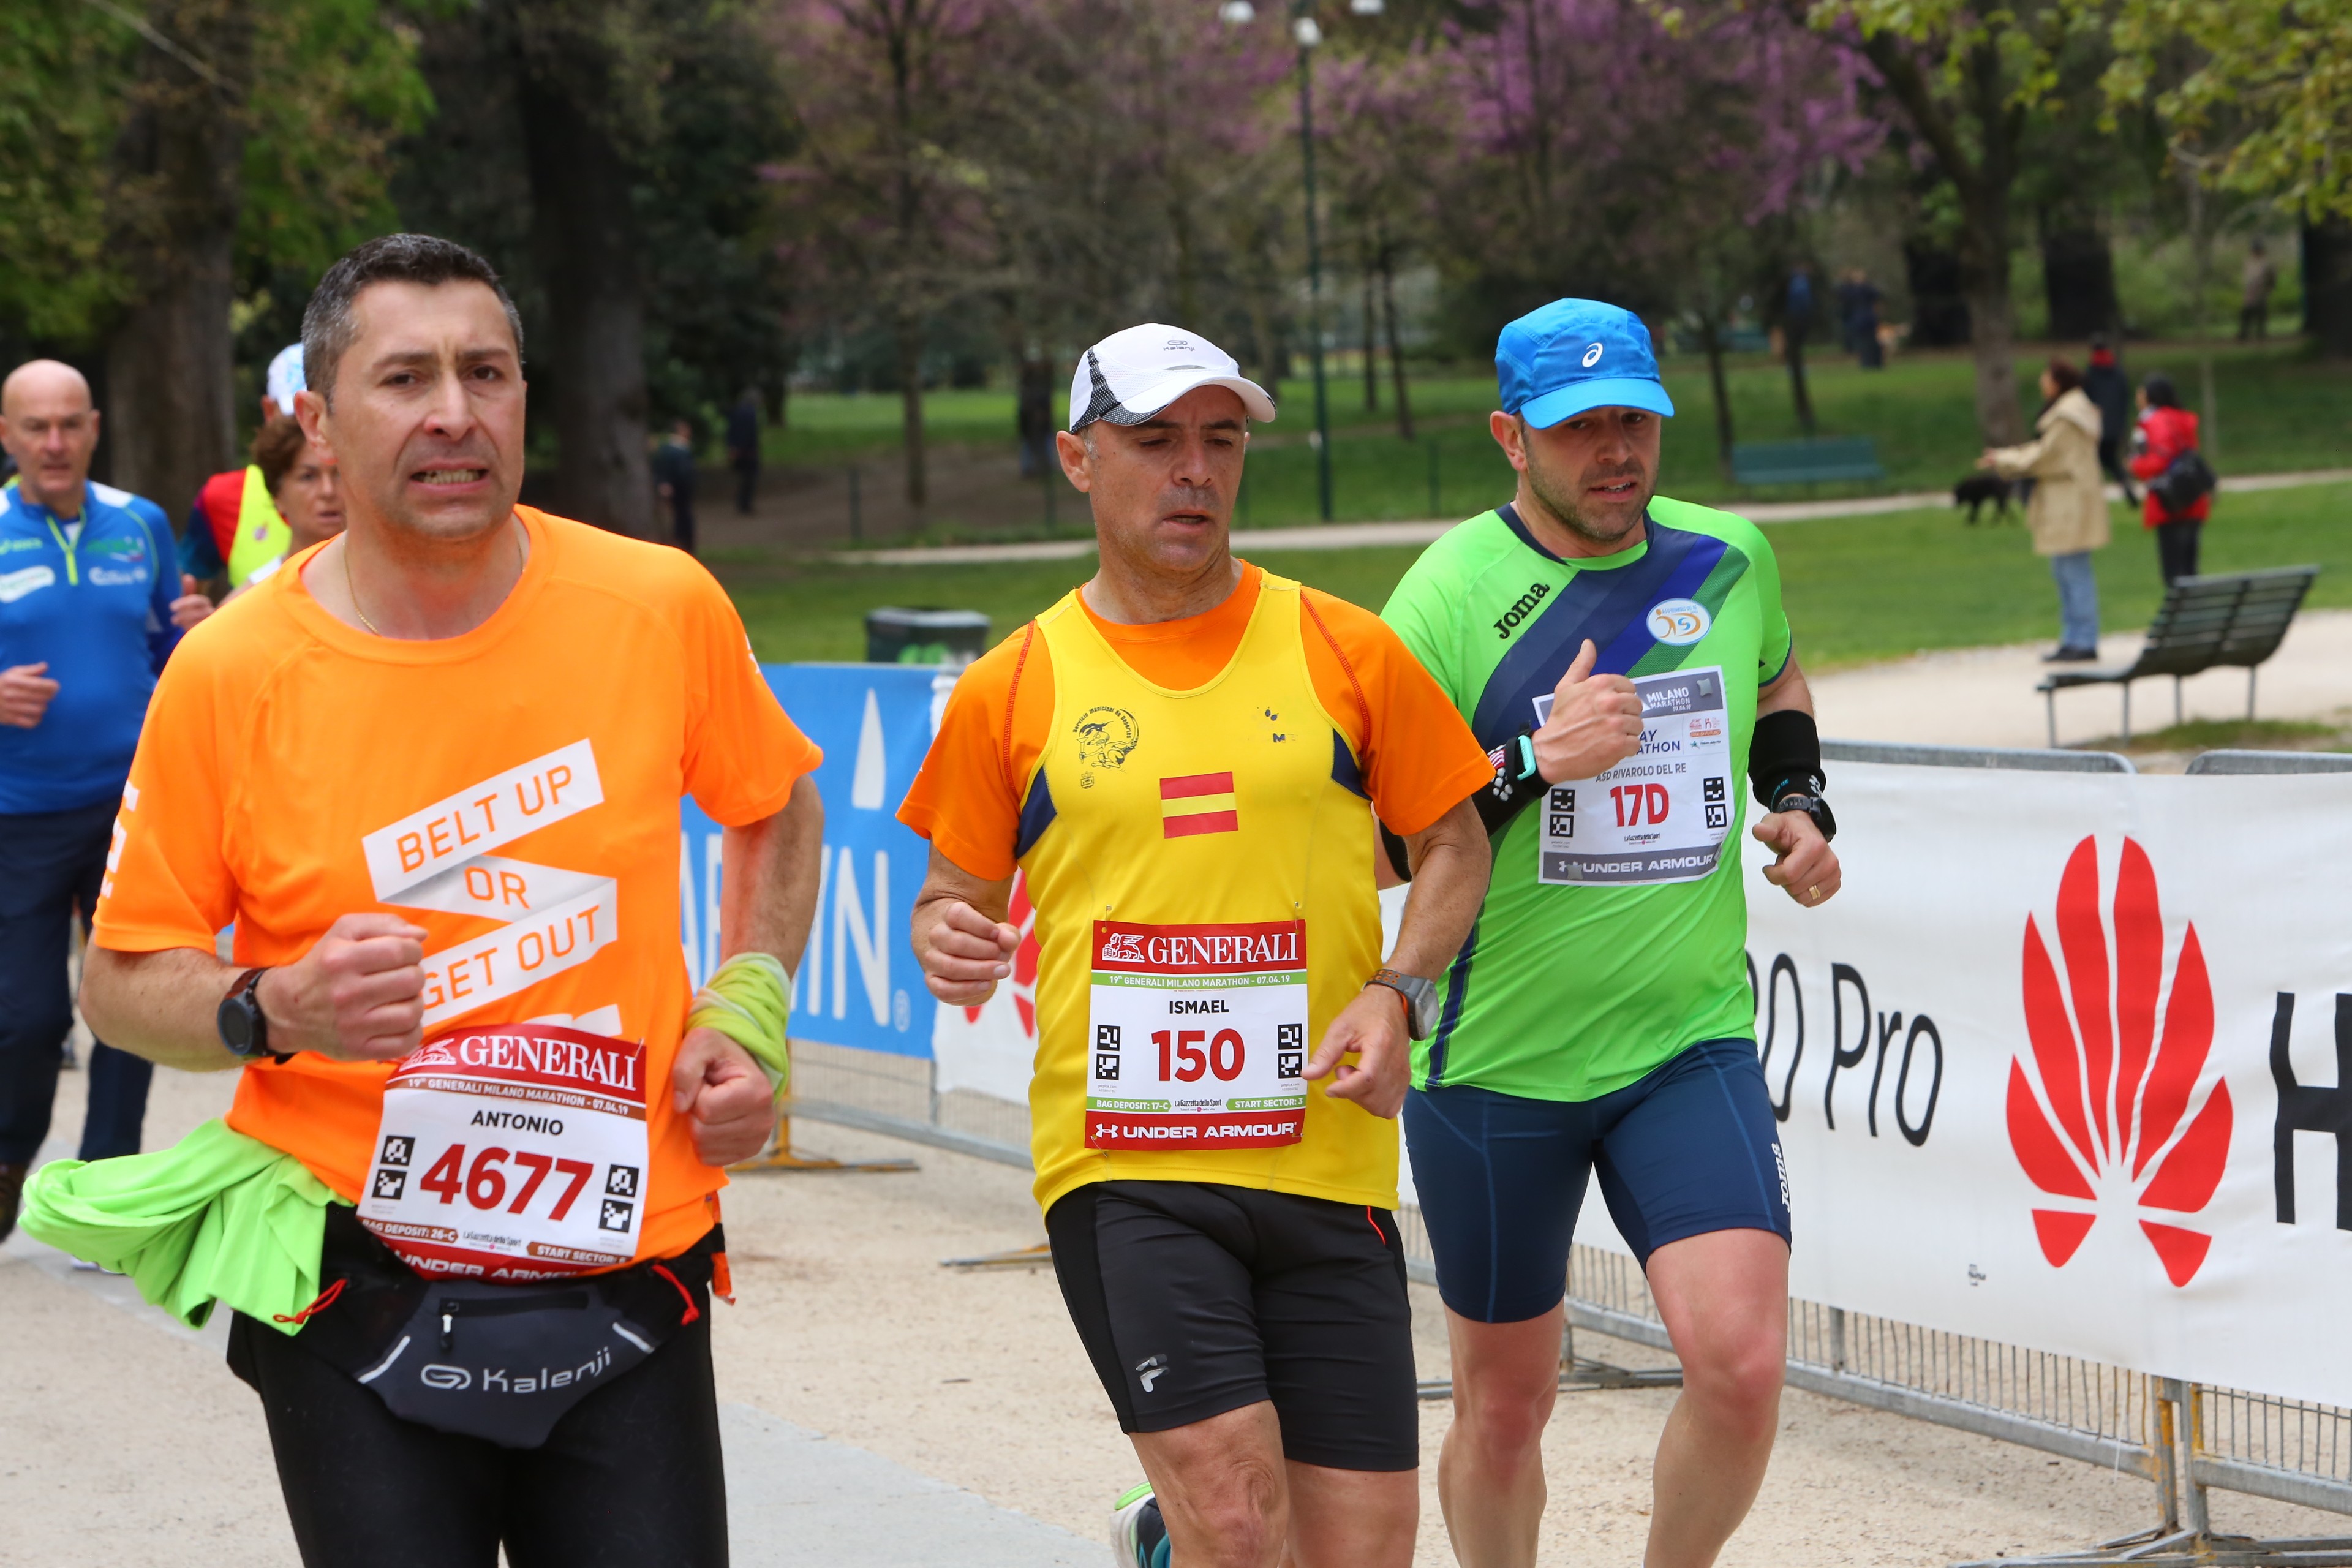 Antonio&Friends pro LILT Marathon'19-Antonio Pagano